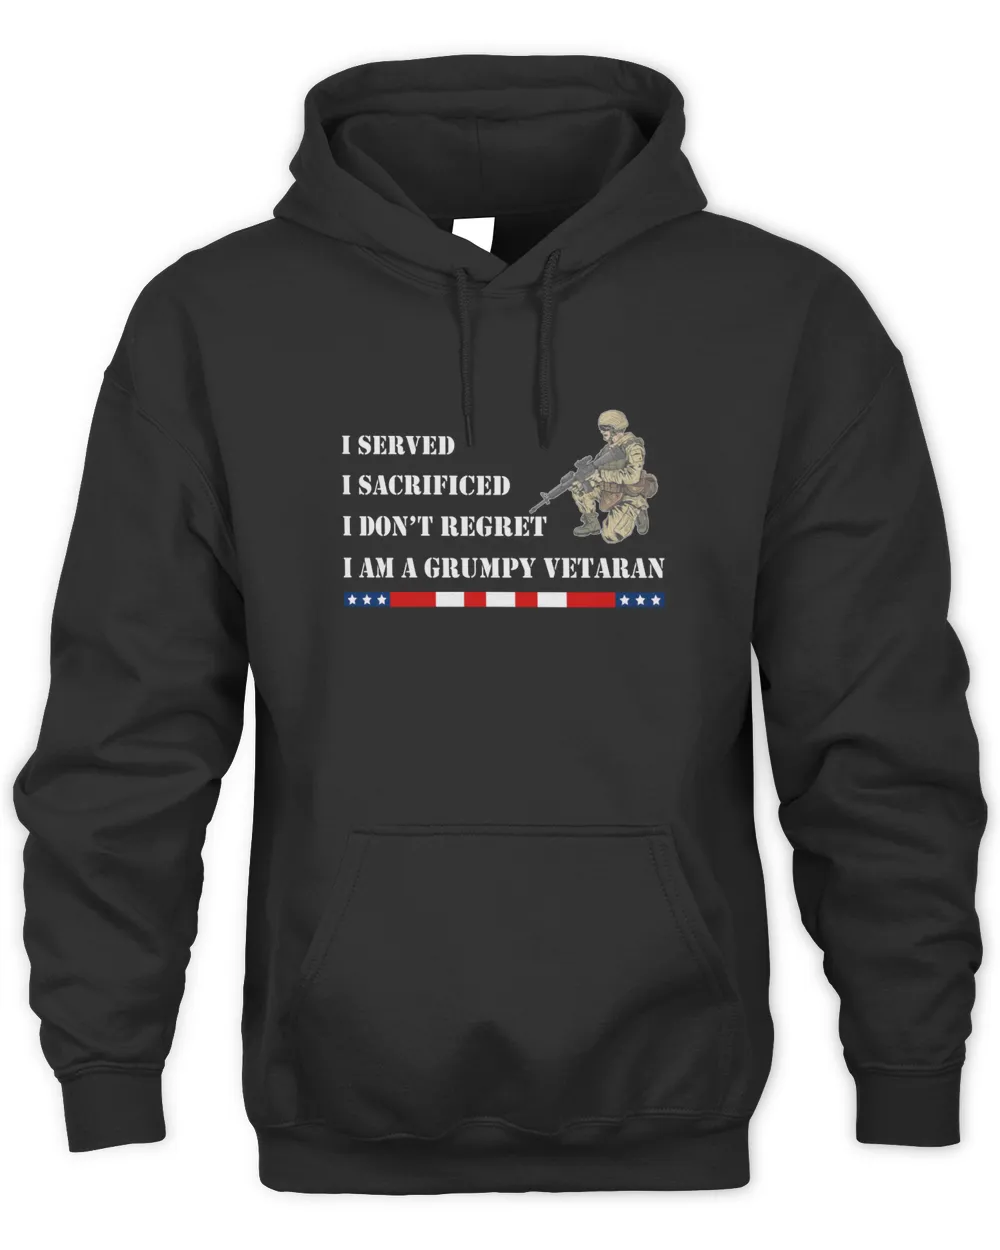 i served-i sacrificed-i don't regret-i am a grumpy veteran